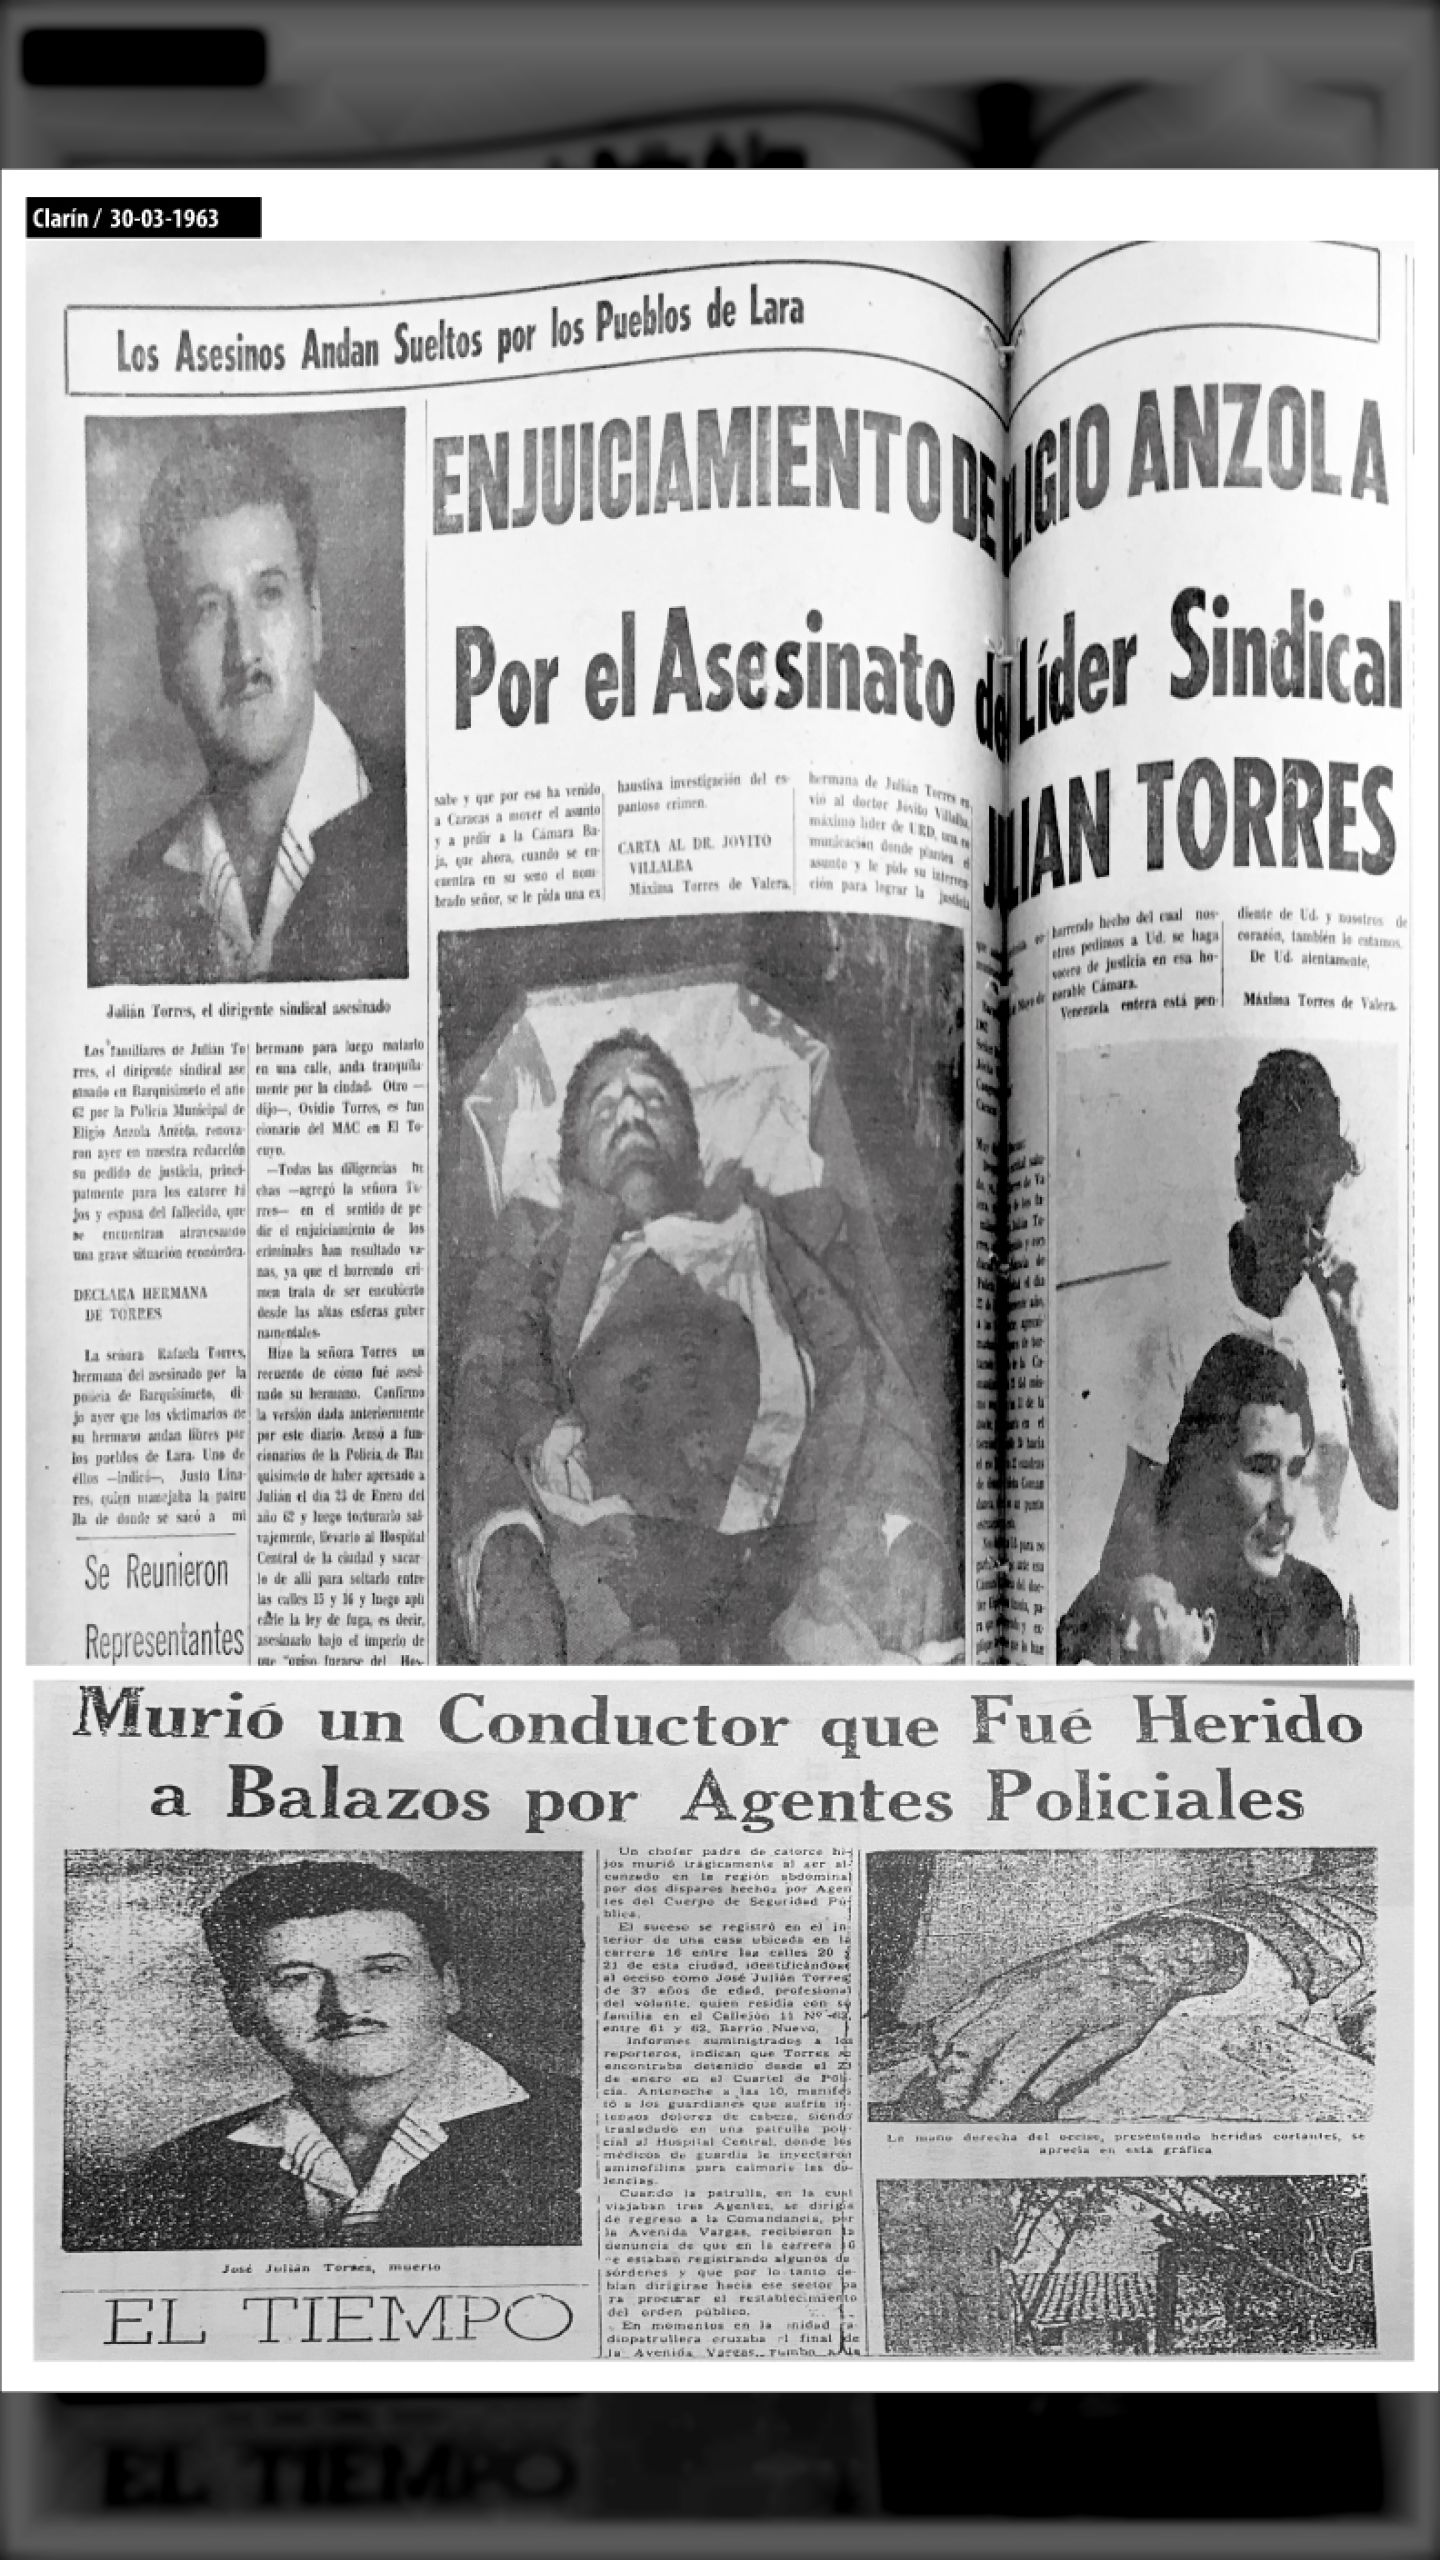 JULIÁN TORRES ES ASESINADO POR BANDAS ARMADAS DE AD (EL TIEMPO, marzo de 1961 y CLARÍN, marzo de 1963)